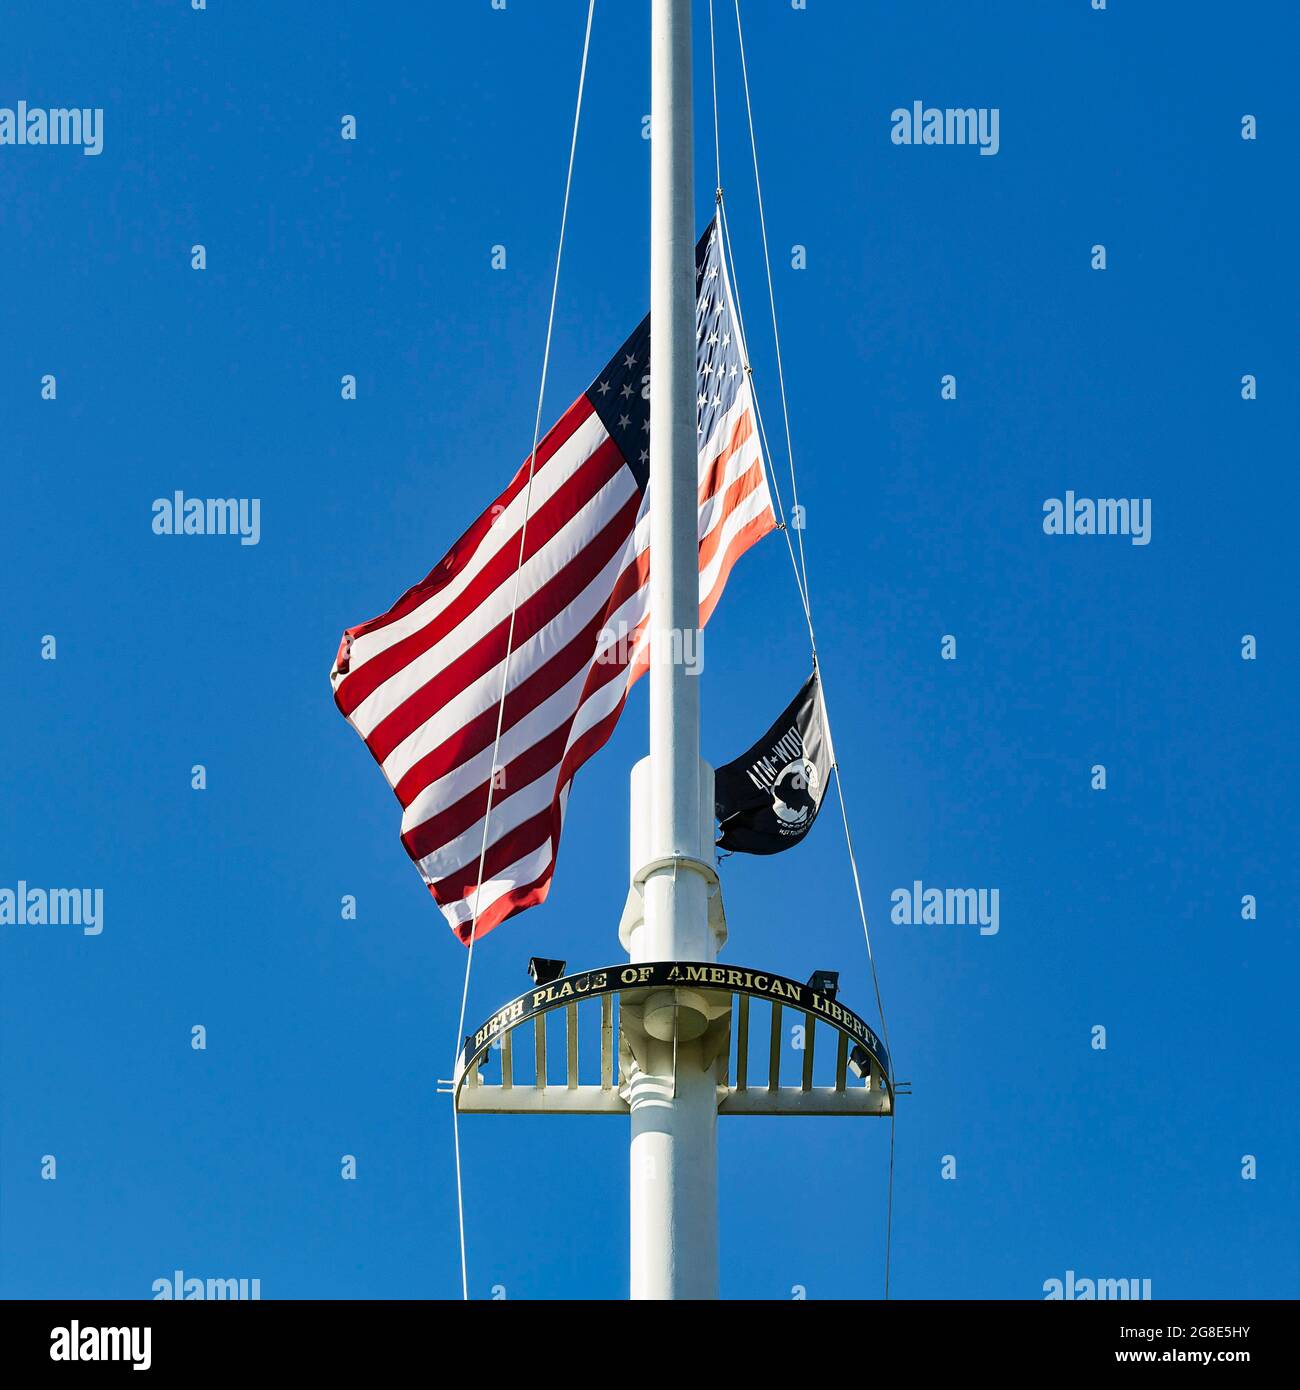 Drapeau avec inscription lieu de naissance de la liberté américaine, drapeau des États-Unis en Berne, Lexington Battle Green, Massachussets, États-Unis Banque D'Images